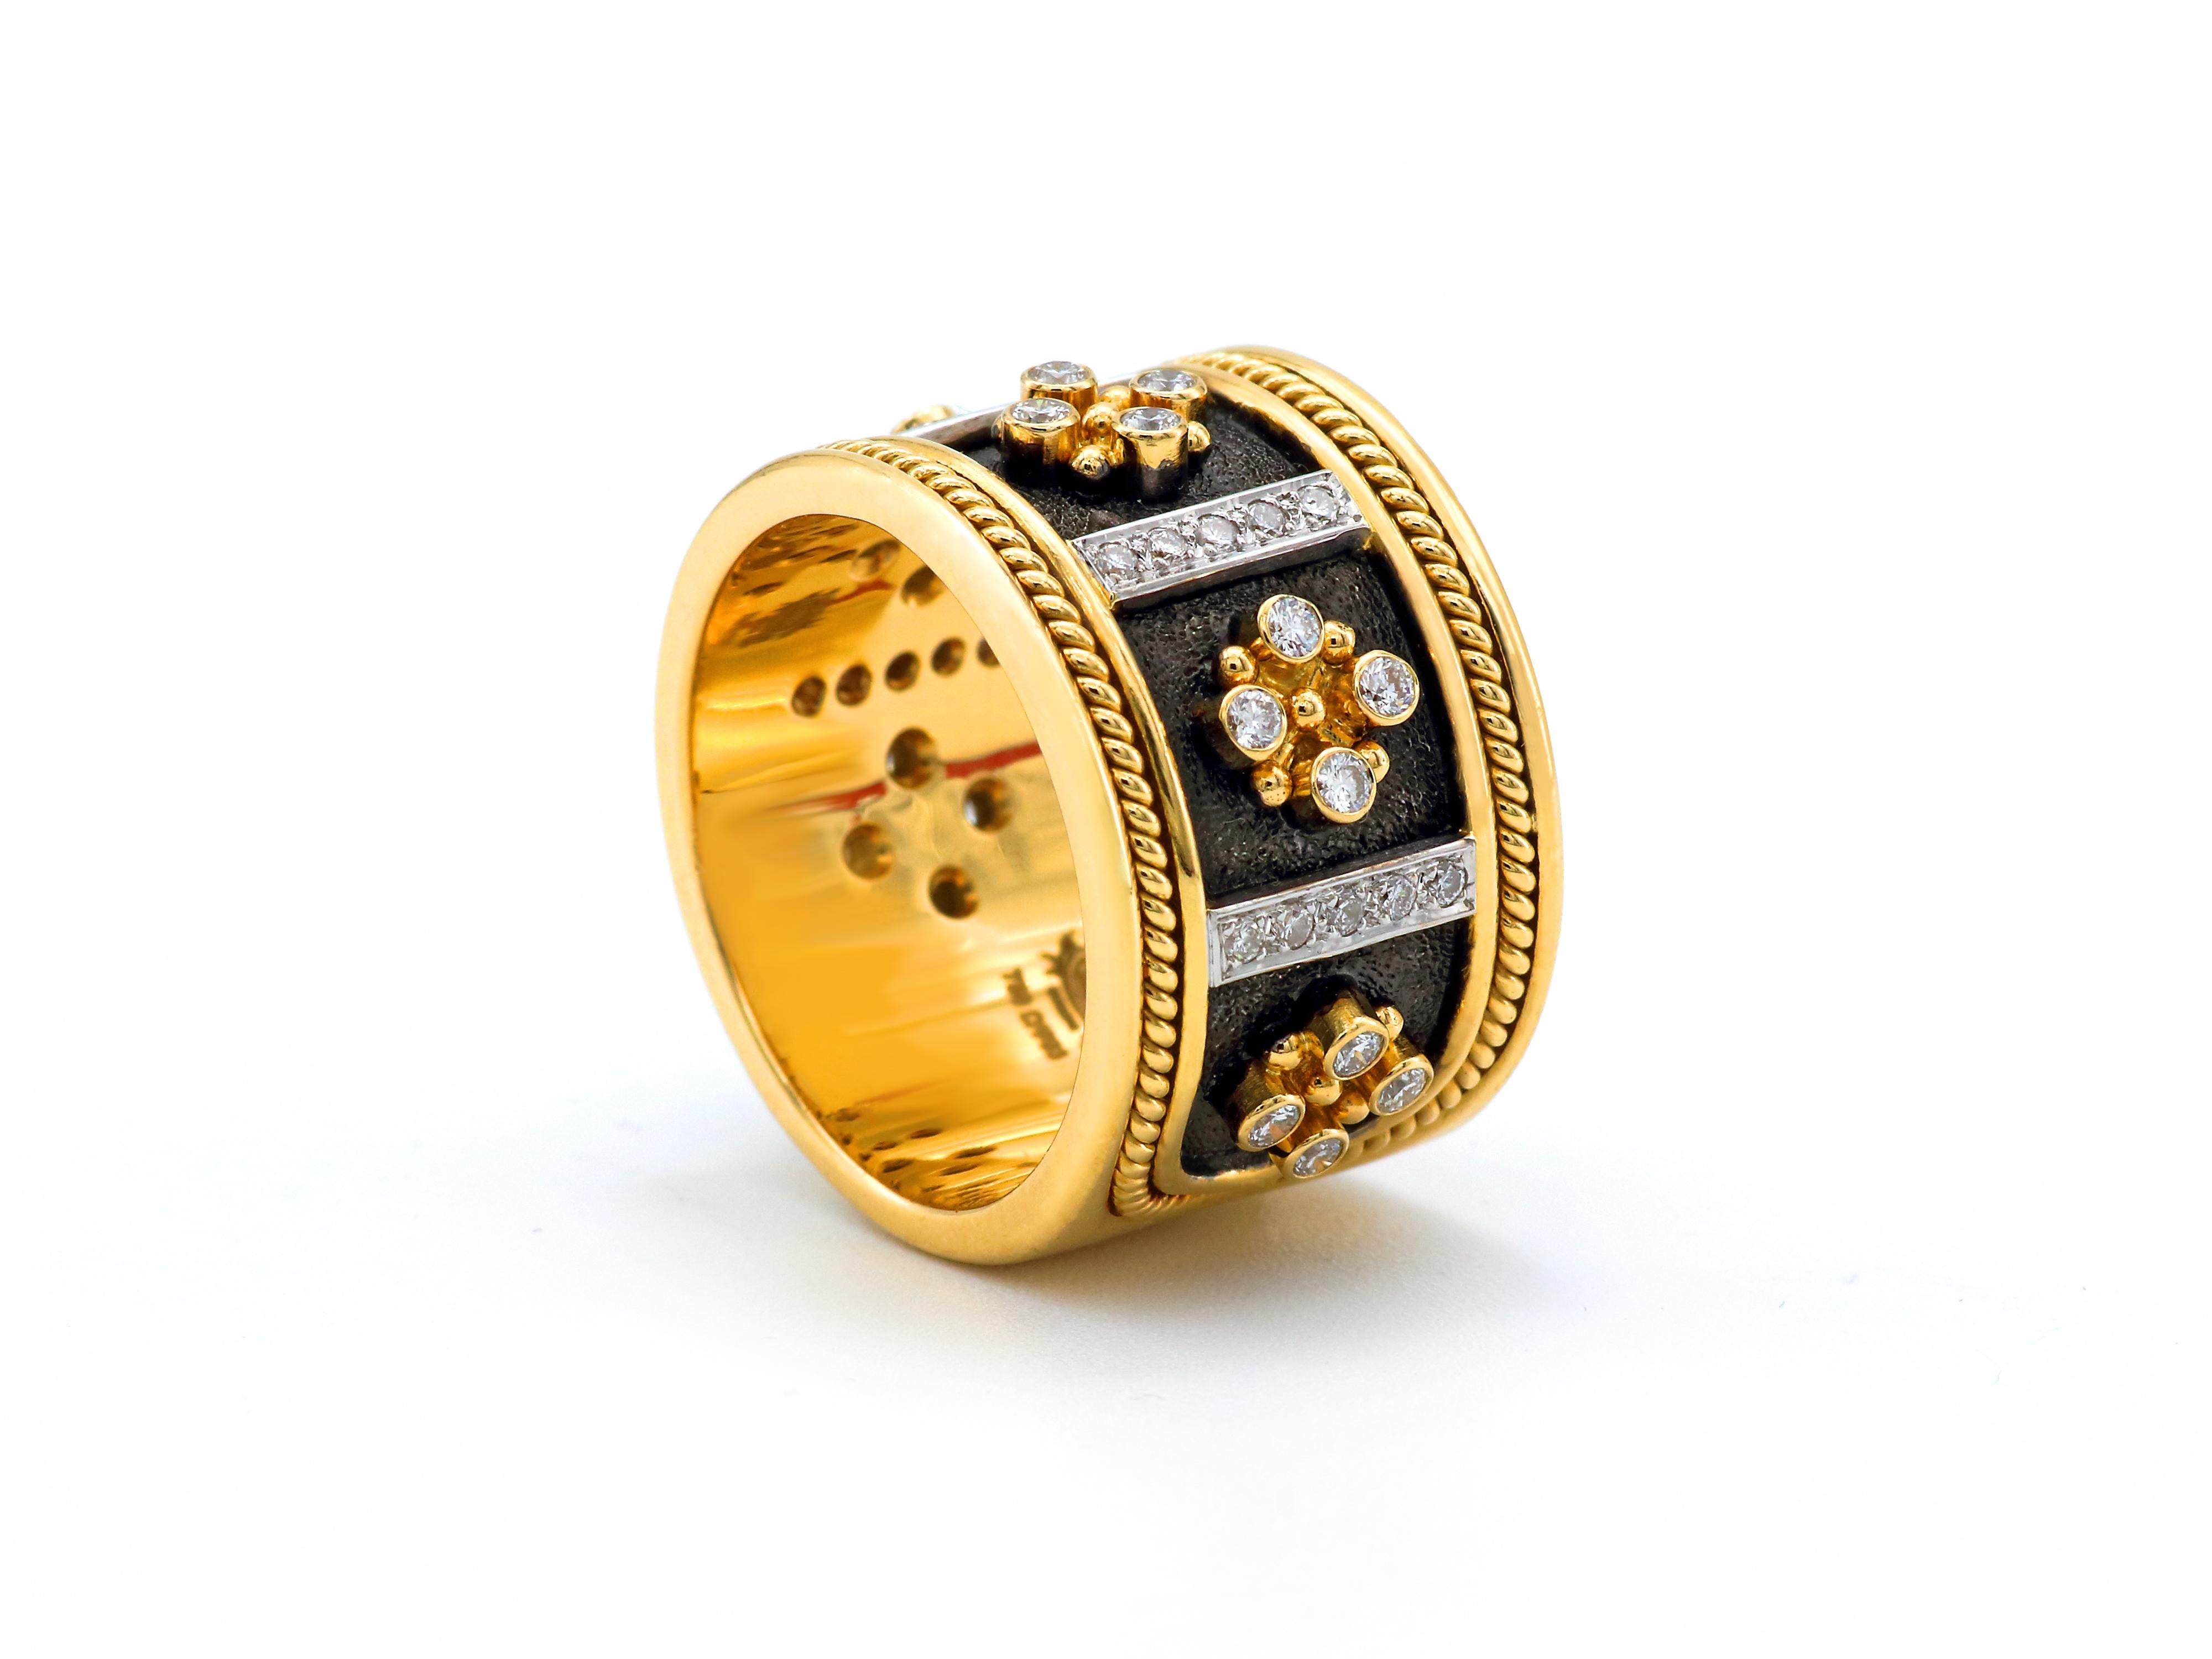 Βyzantinisch inspirierter Ring der Collection'S Noir, handgefertigt in Athen (Griechenland) von Dimos aus 18 Karat Gold und besetzt mit 0,80 Karat Diamanten im Brillantschliff. 
Handgefertigte Filigranität, Granulationsperlen, ein massiver und